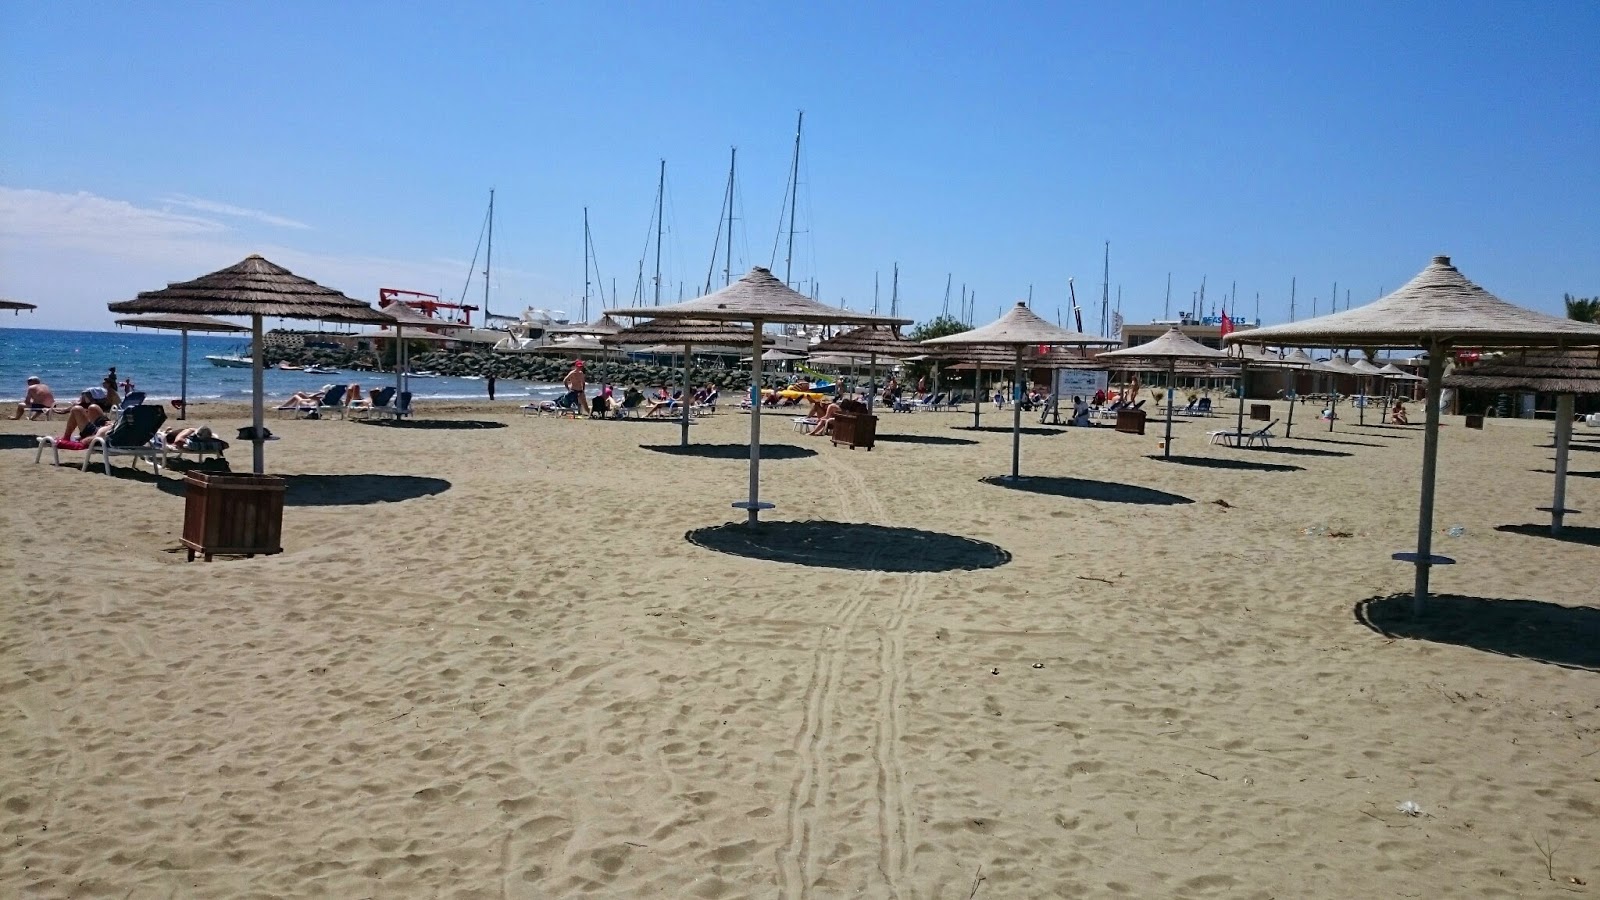 Zdjęcie Panagies beach - popularne miejsce wśród znawców relaksu